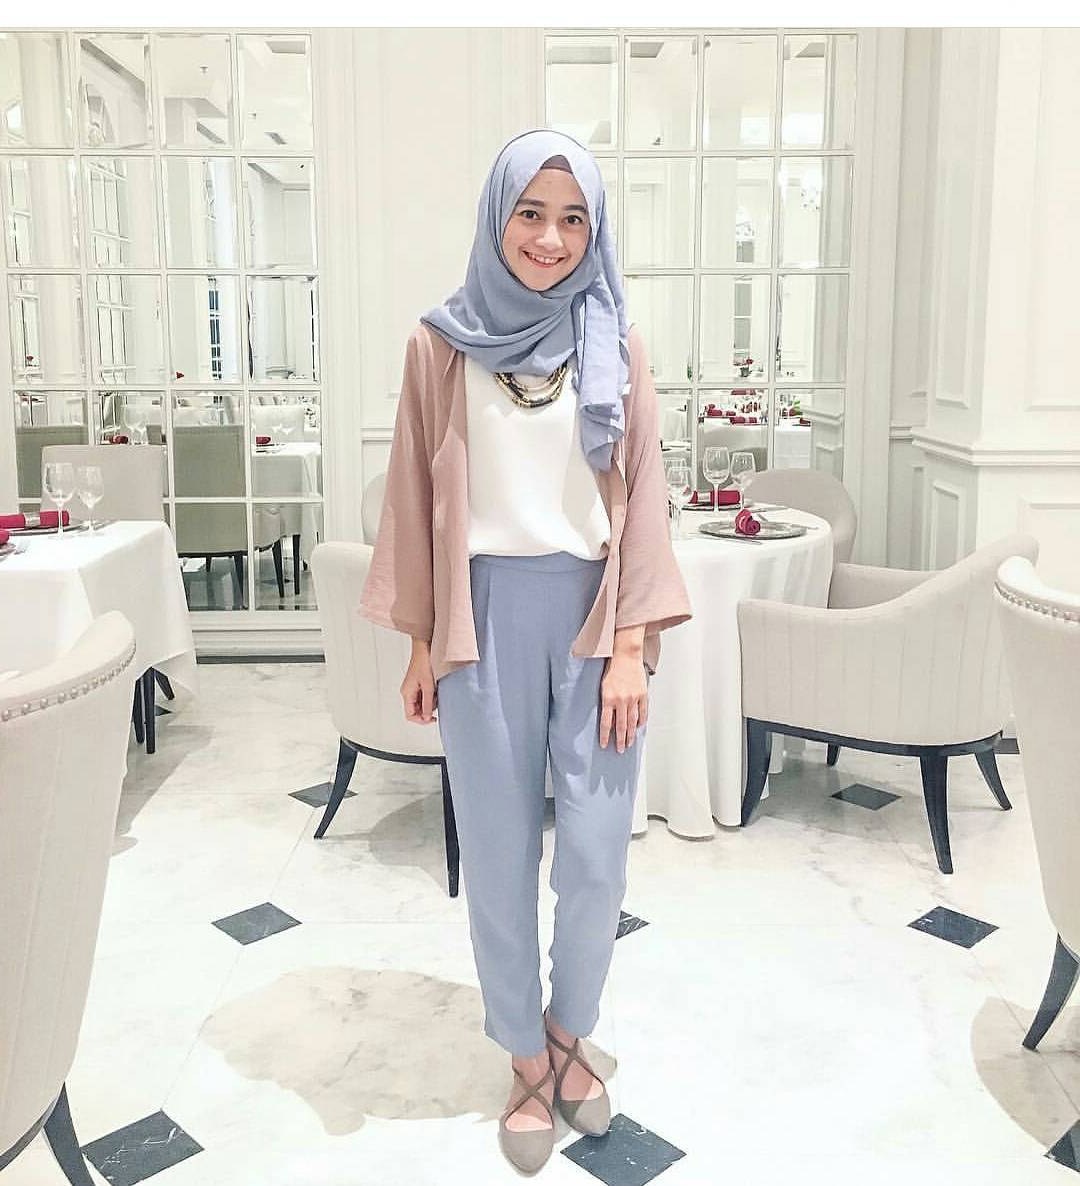 Inspirasi Model Baju Lebaran Kekinian 2019 Q0d4 20 Trend Model Baju Muslim Lebaran 2018 Casual Simple Dan